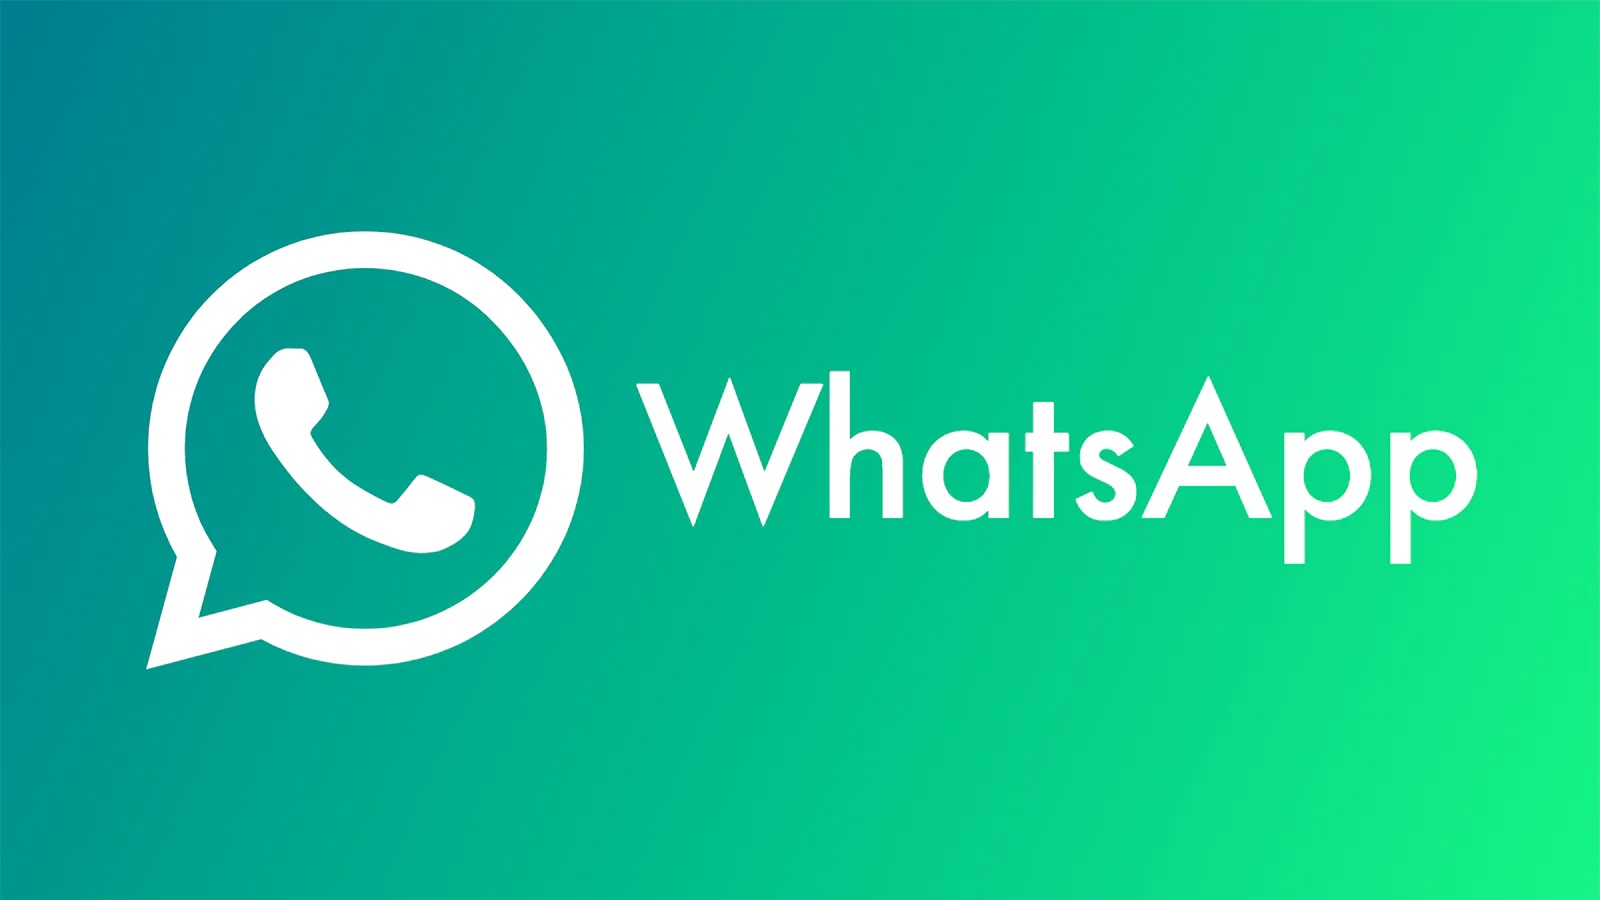 WhatsApp har officiellt presenterat sitt nya navigeringsfält